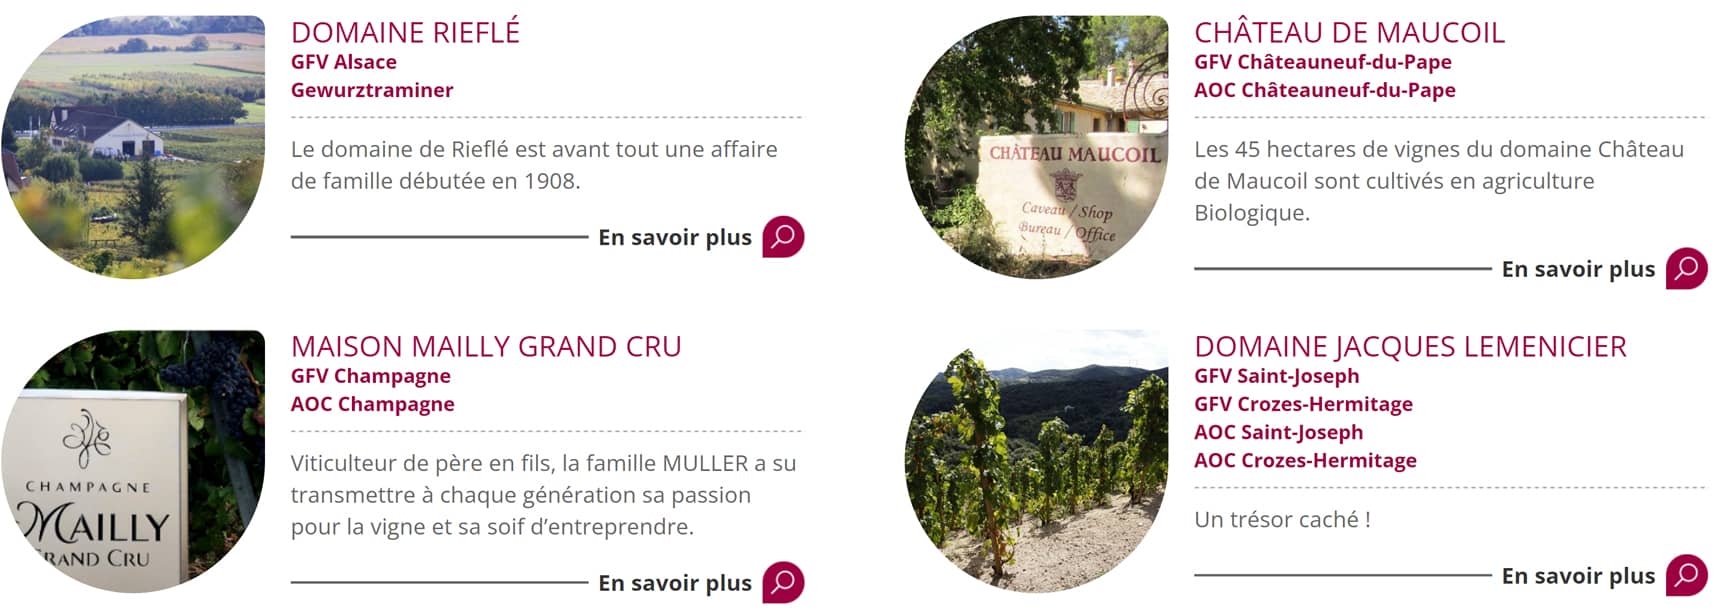 Les réalisations en matière investissements viticoles de Bacchus Conseil en France 1